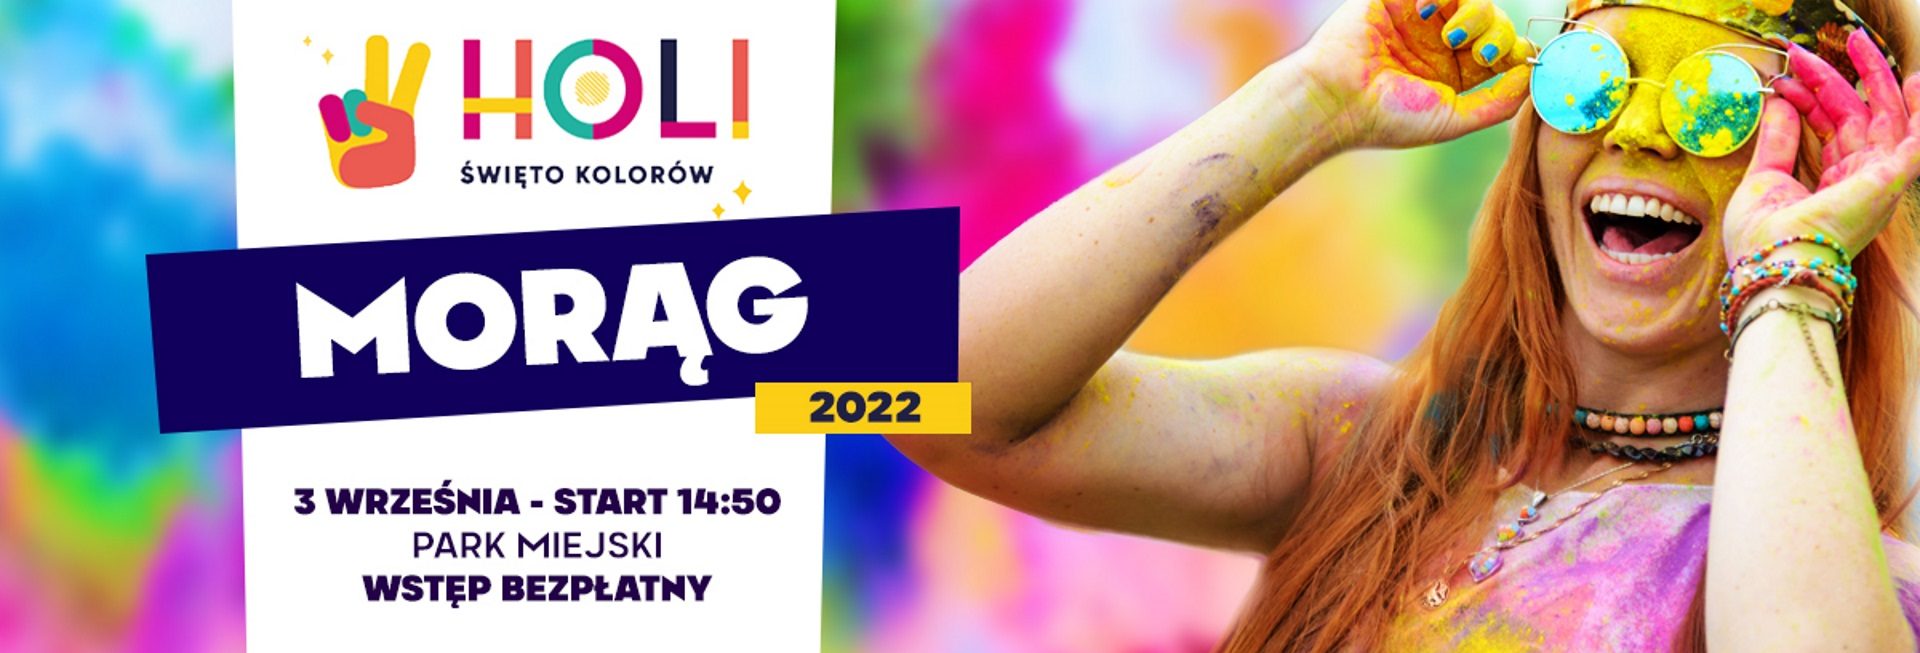 Plakat zapraszający do Morąga na Holi Święto Kolorów w Morąg 2022.  